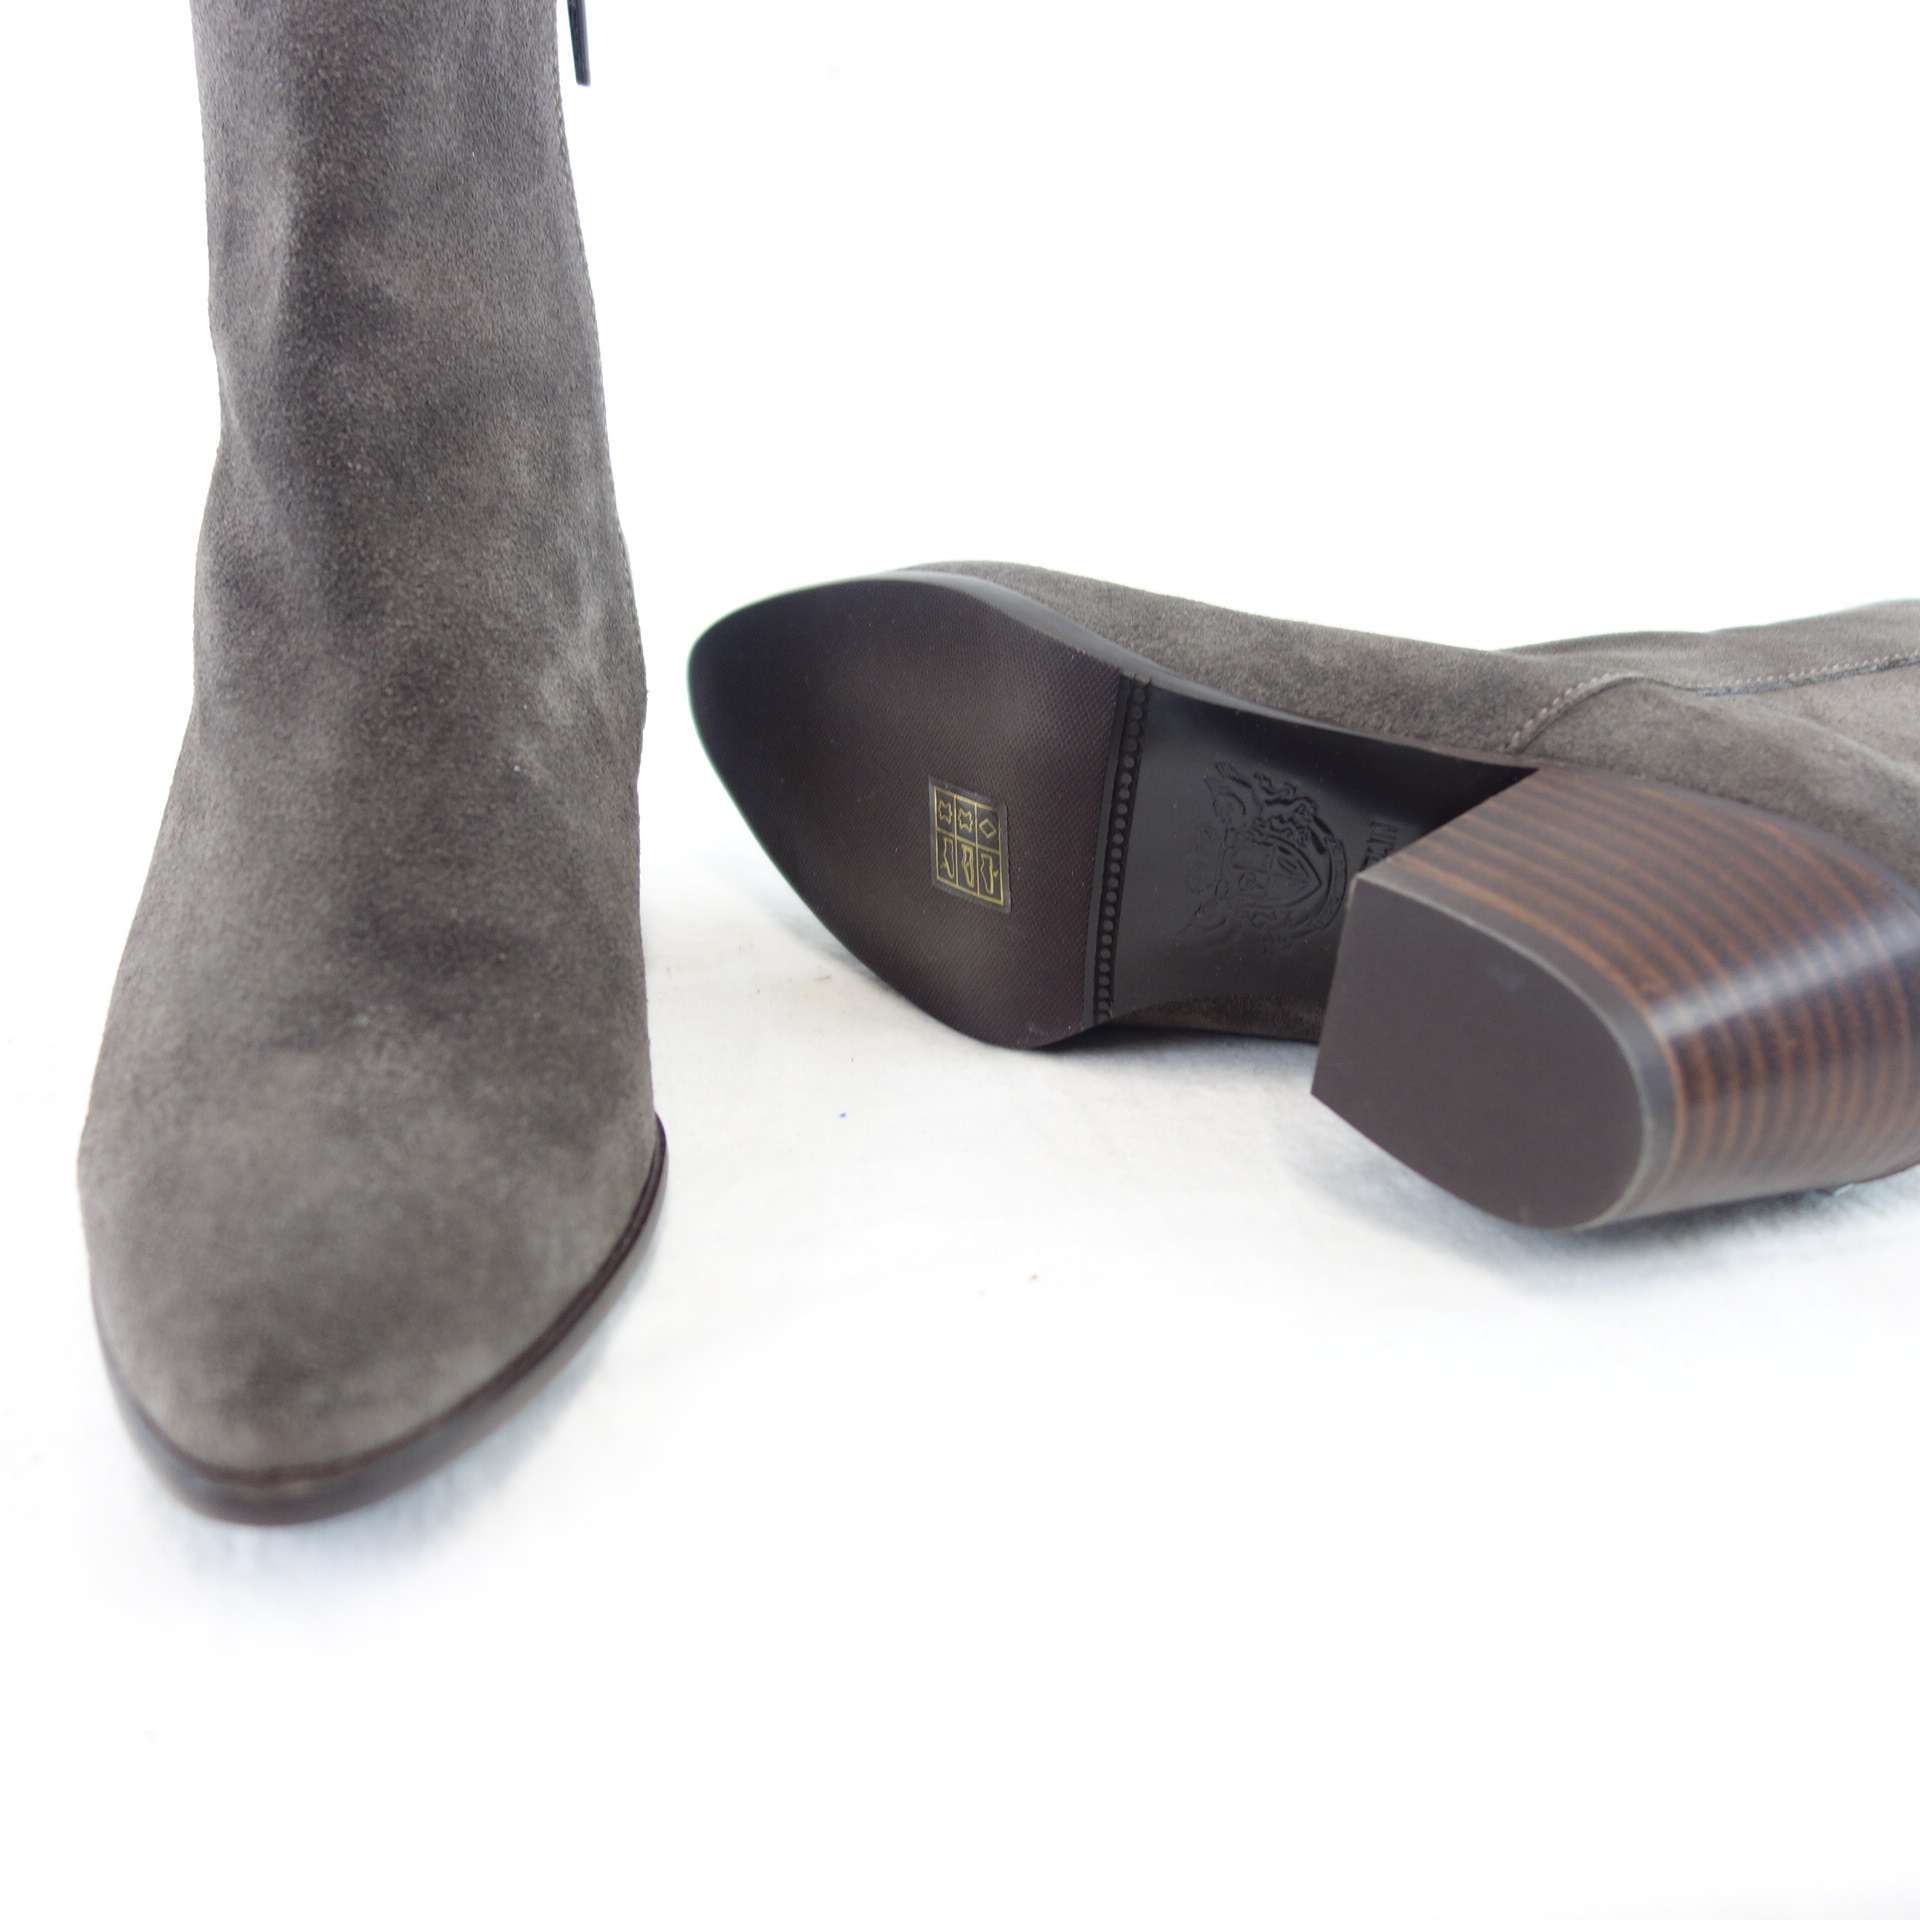 PEDRO MIRALLES Damen Schuhe Stiefeletten Stiefel Boots Dunkelgrau Taupe Wildleder Größe 37 